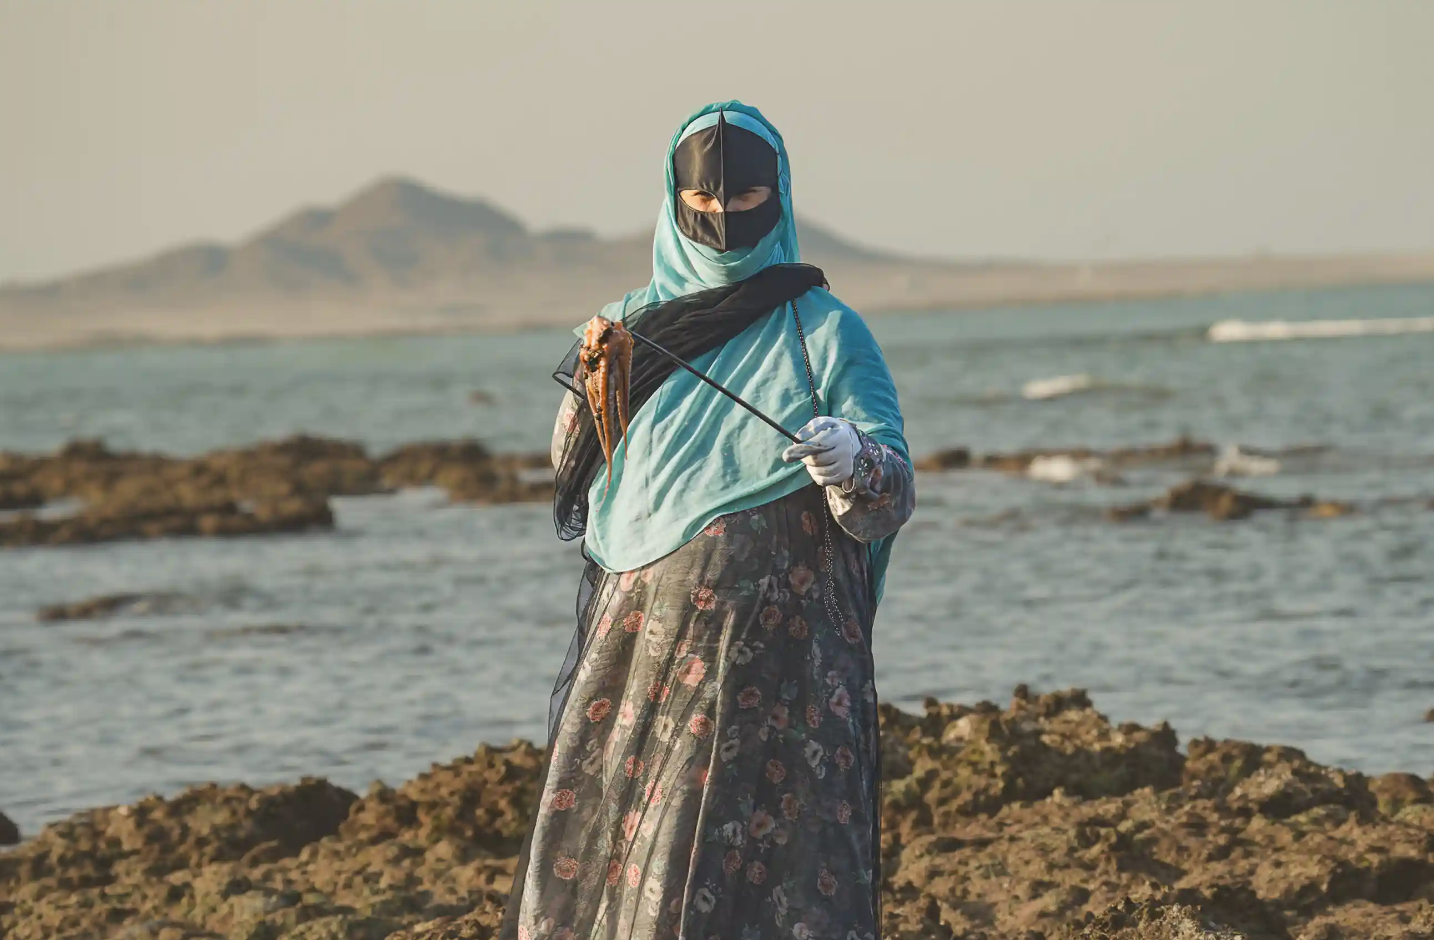 Vùng đất nơi nữ giới sơn móng tay, mặc áo dài truyền thống cầm giáo ra biển săn mực, nghề nghiệp độc đáo nhưng sắp đi đến hồi kết - ảnh 1